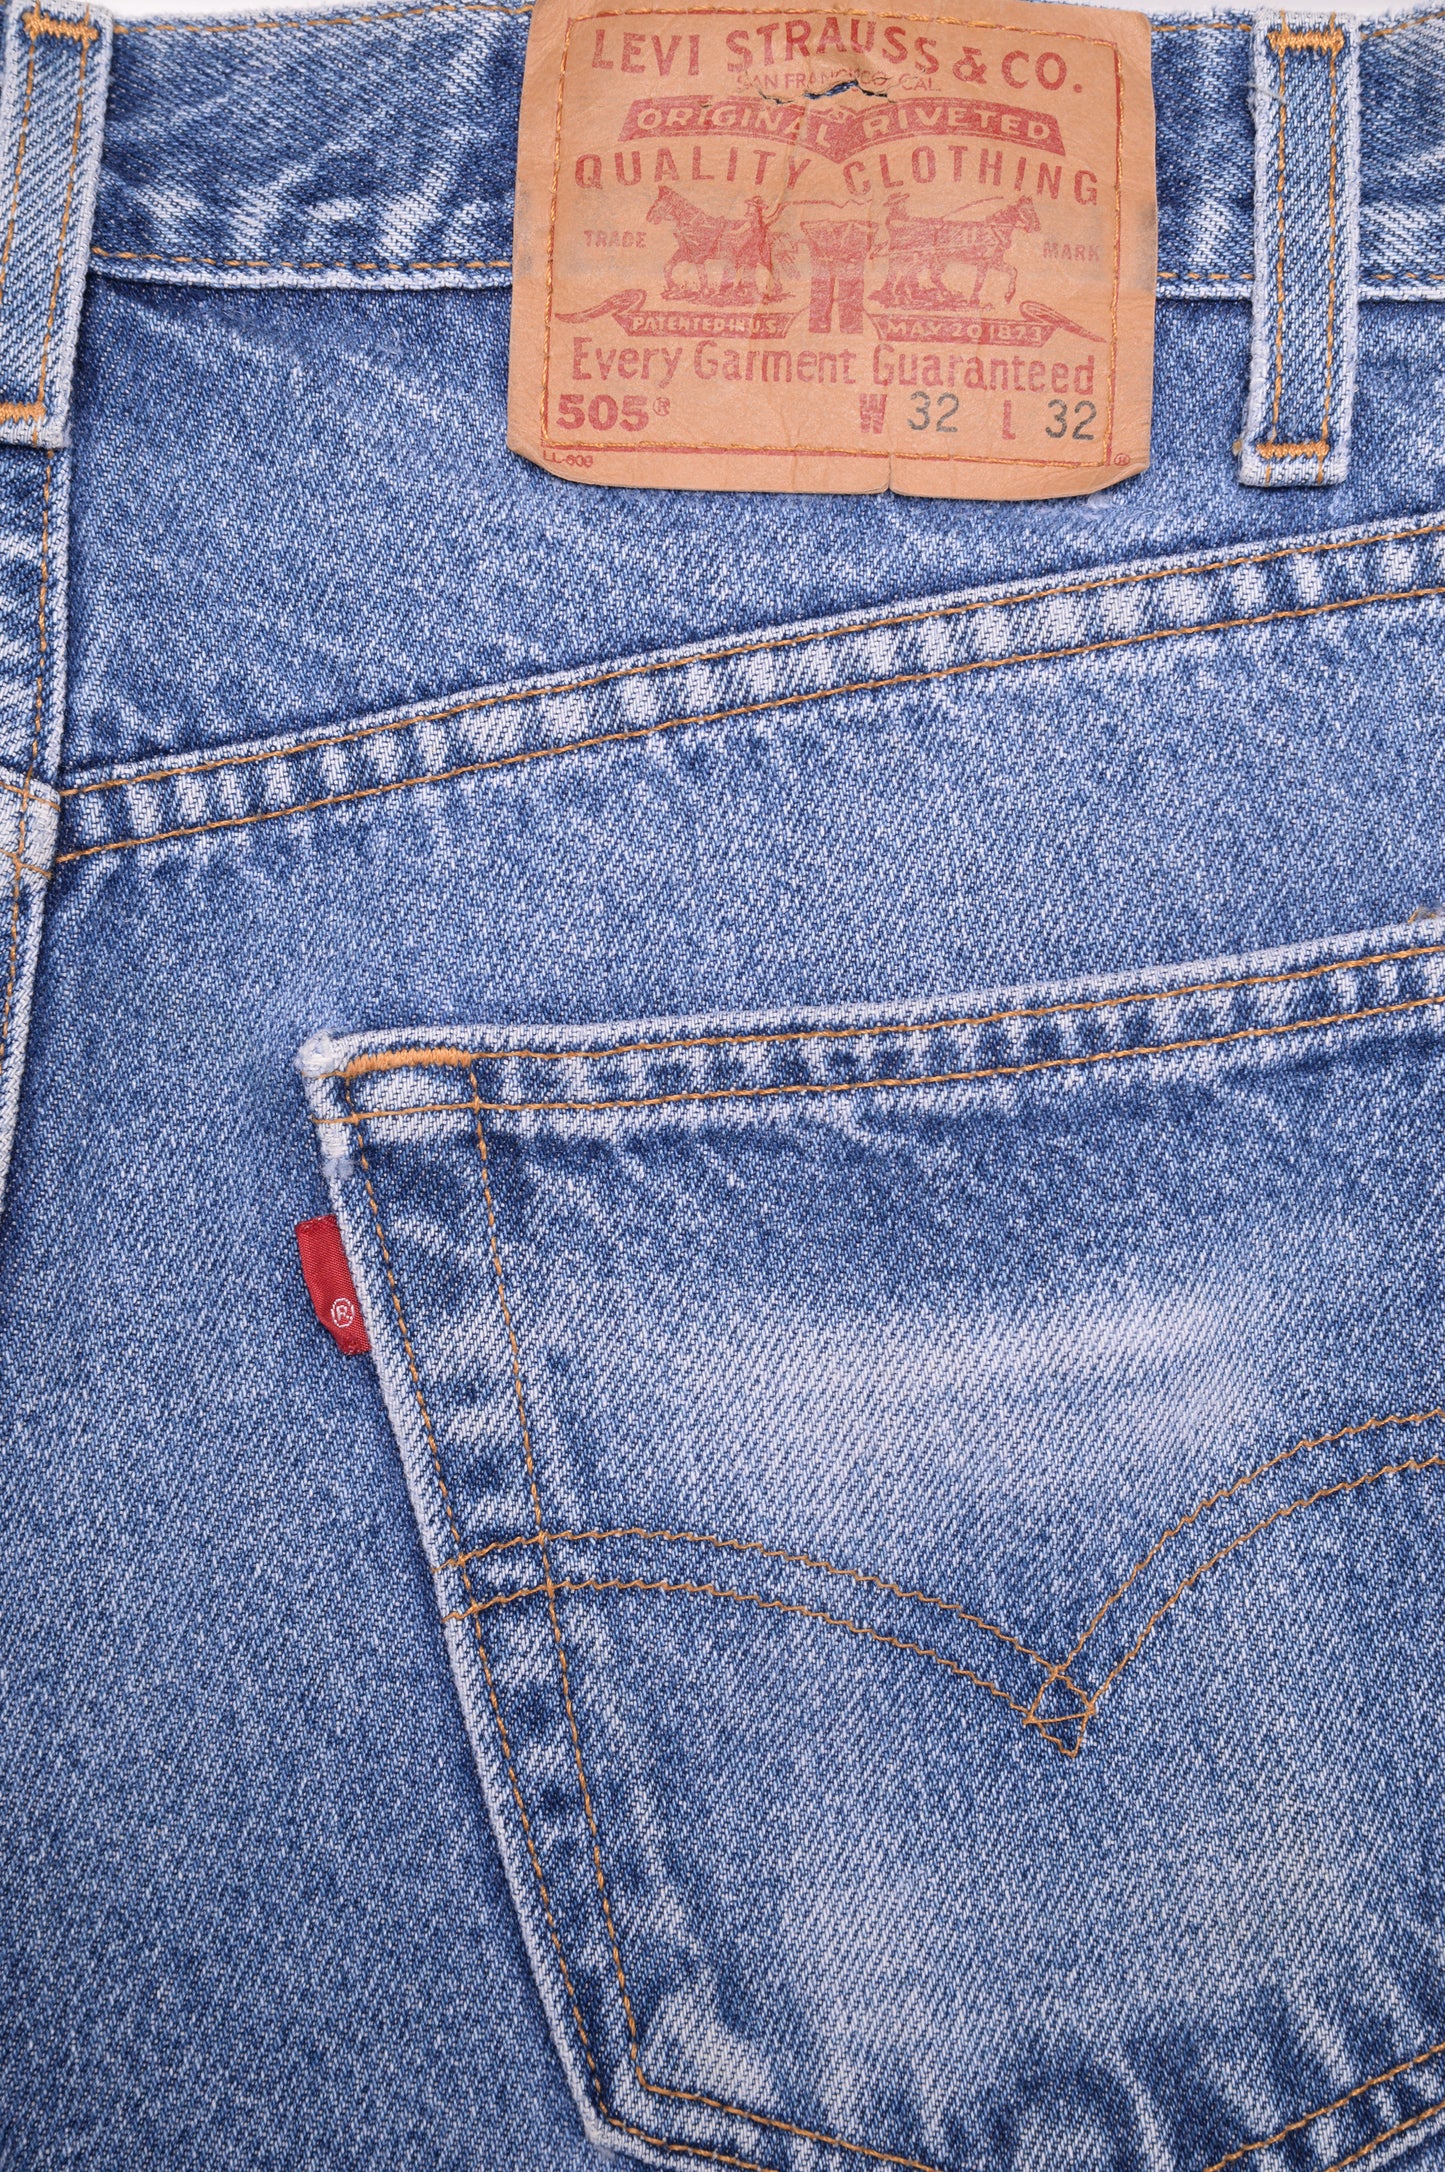 Faded Straight 505 Levi's Jeans 31W x 31L